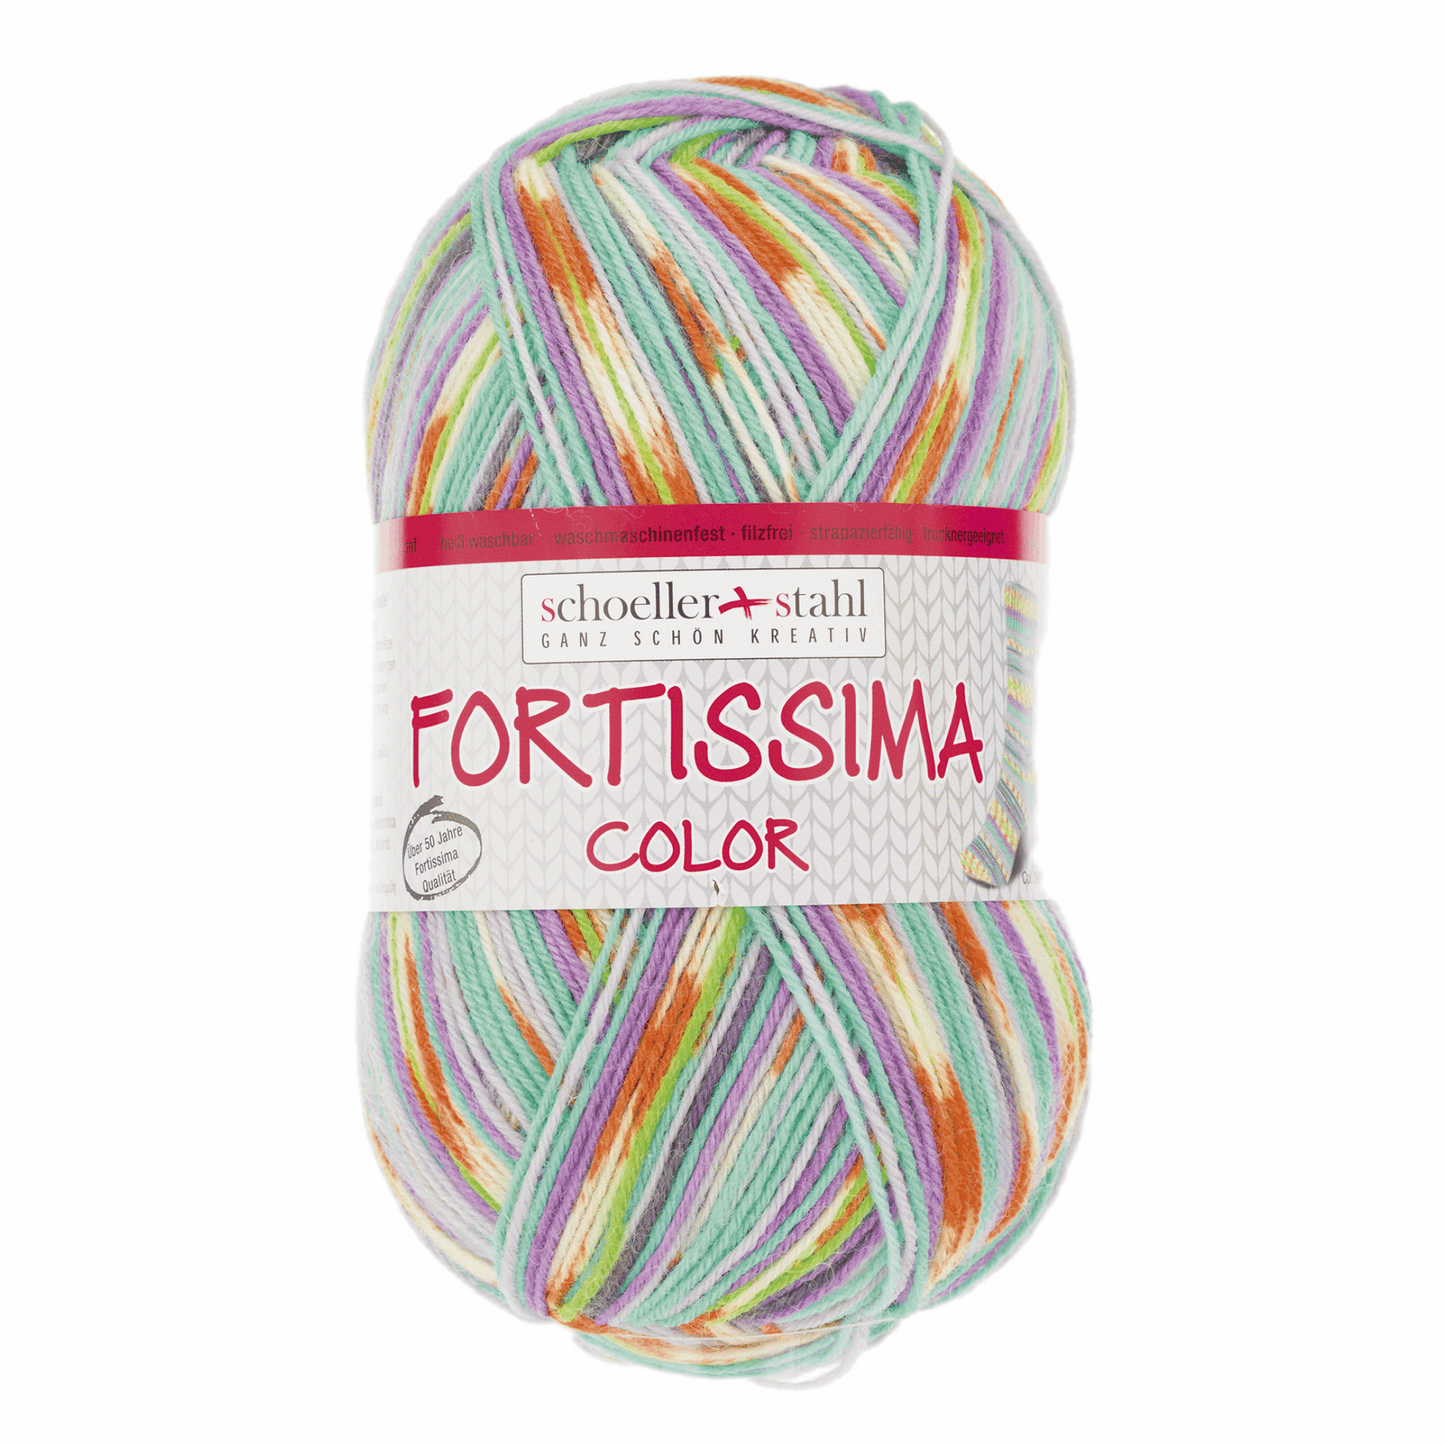 Fortissima socka 4fädig, 90028, Farbe 2493, pastell